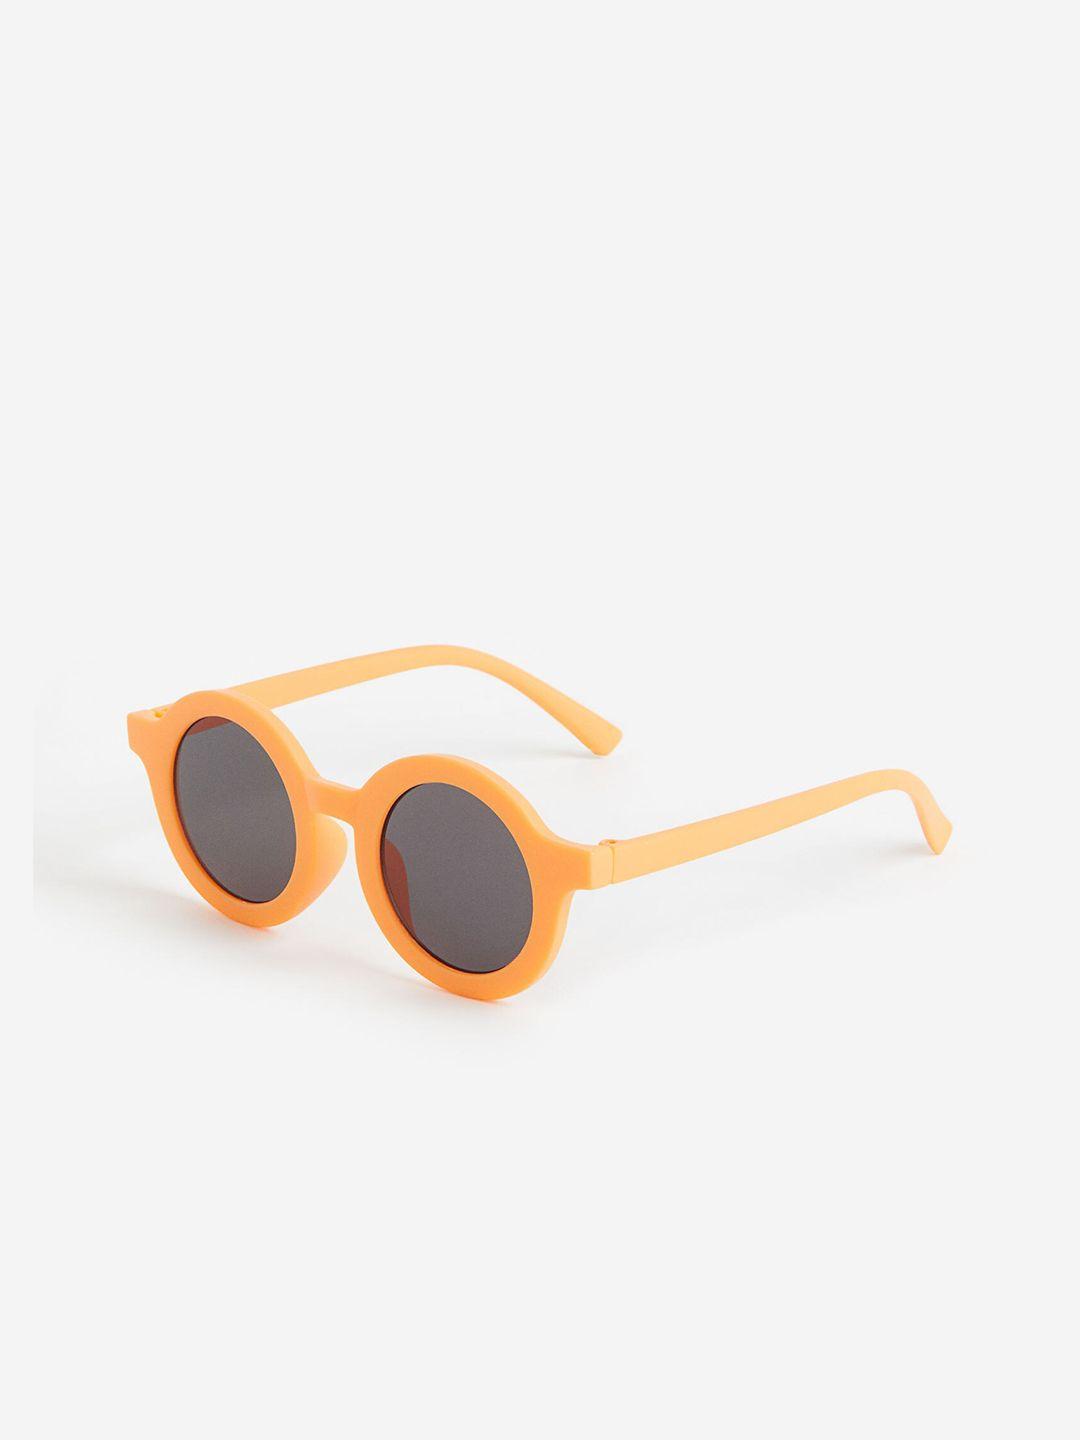 H&M Girls Round Sunglasses 1143419001